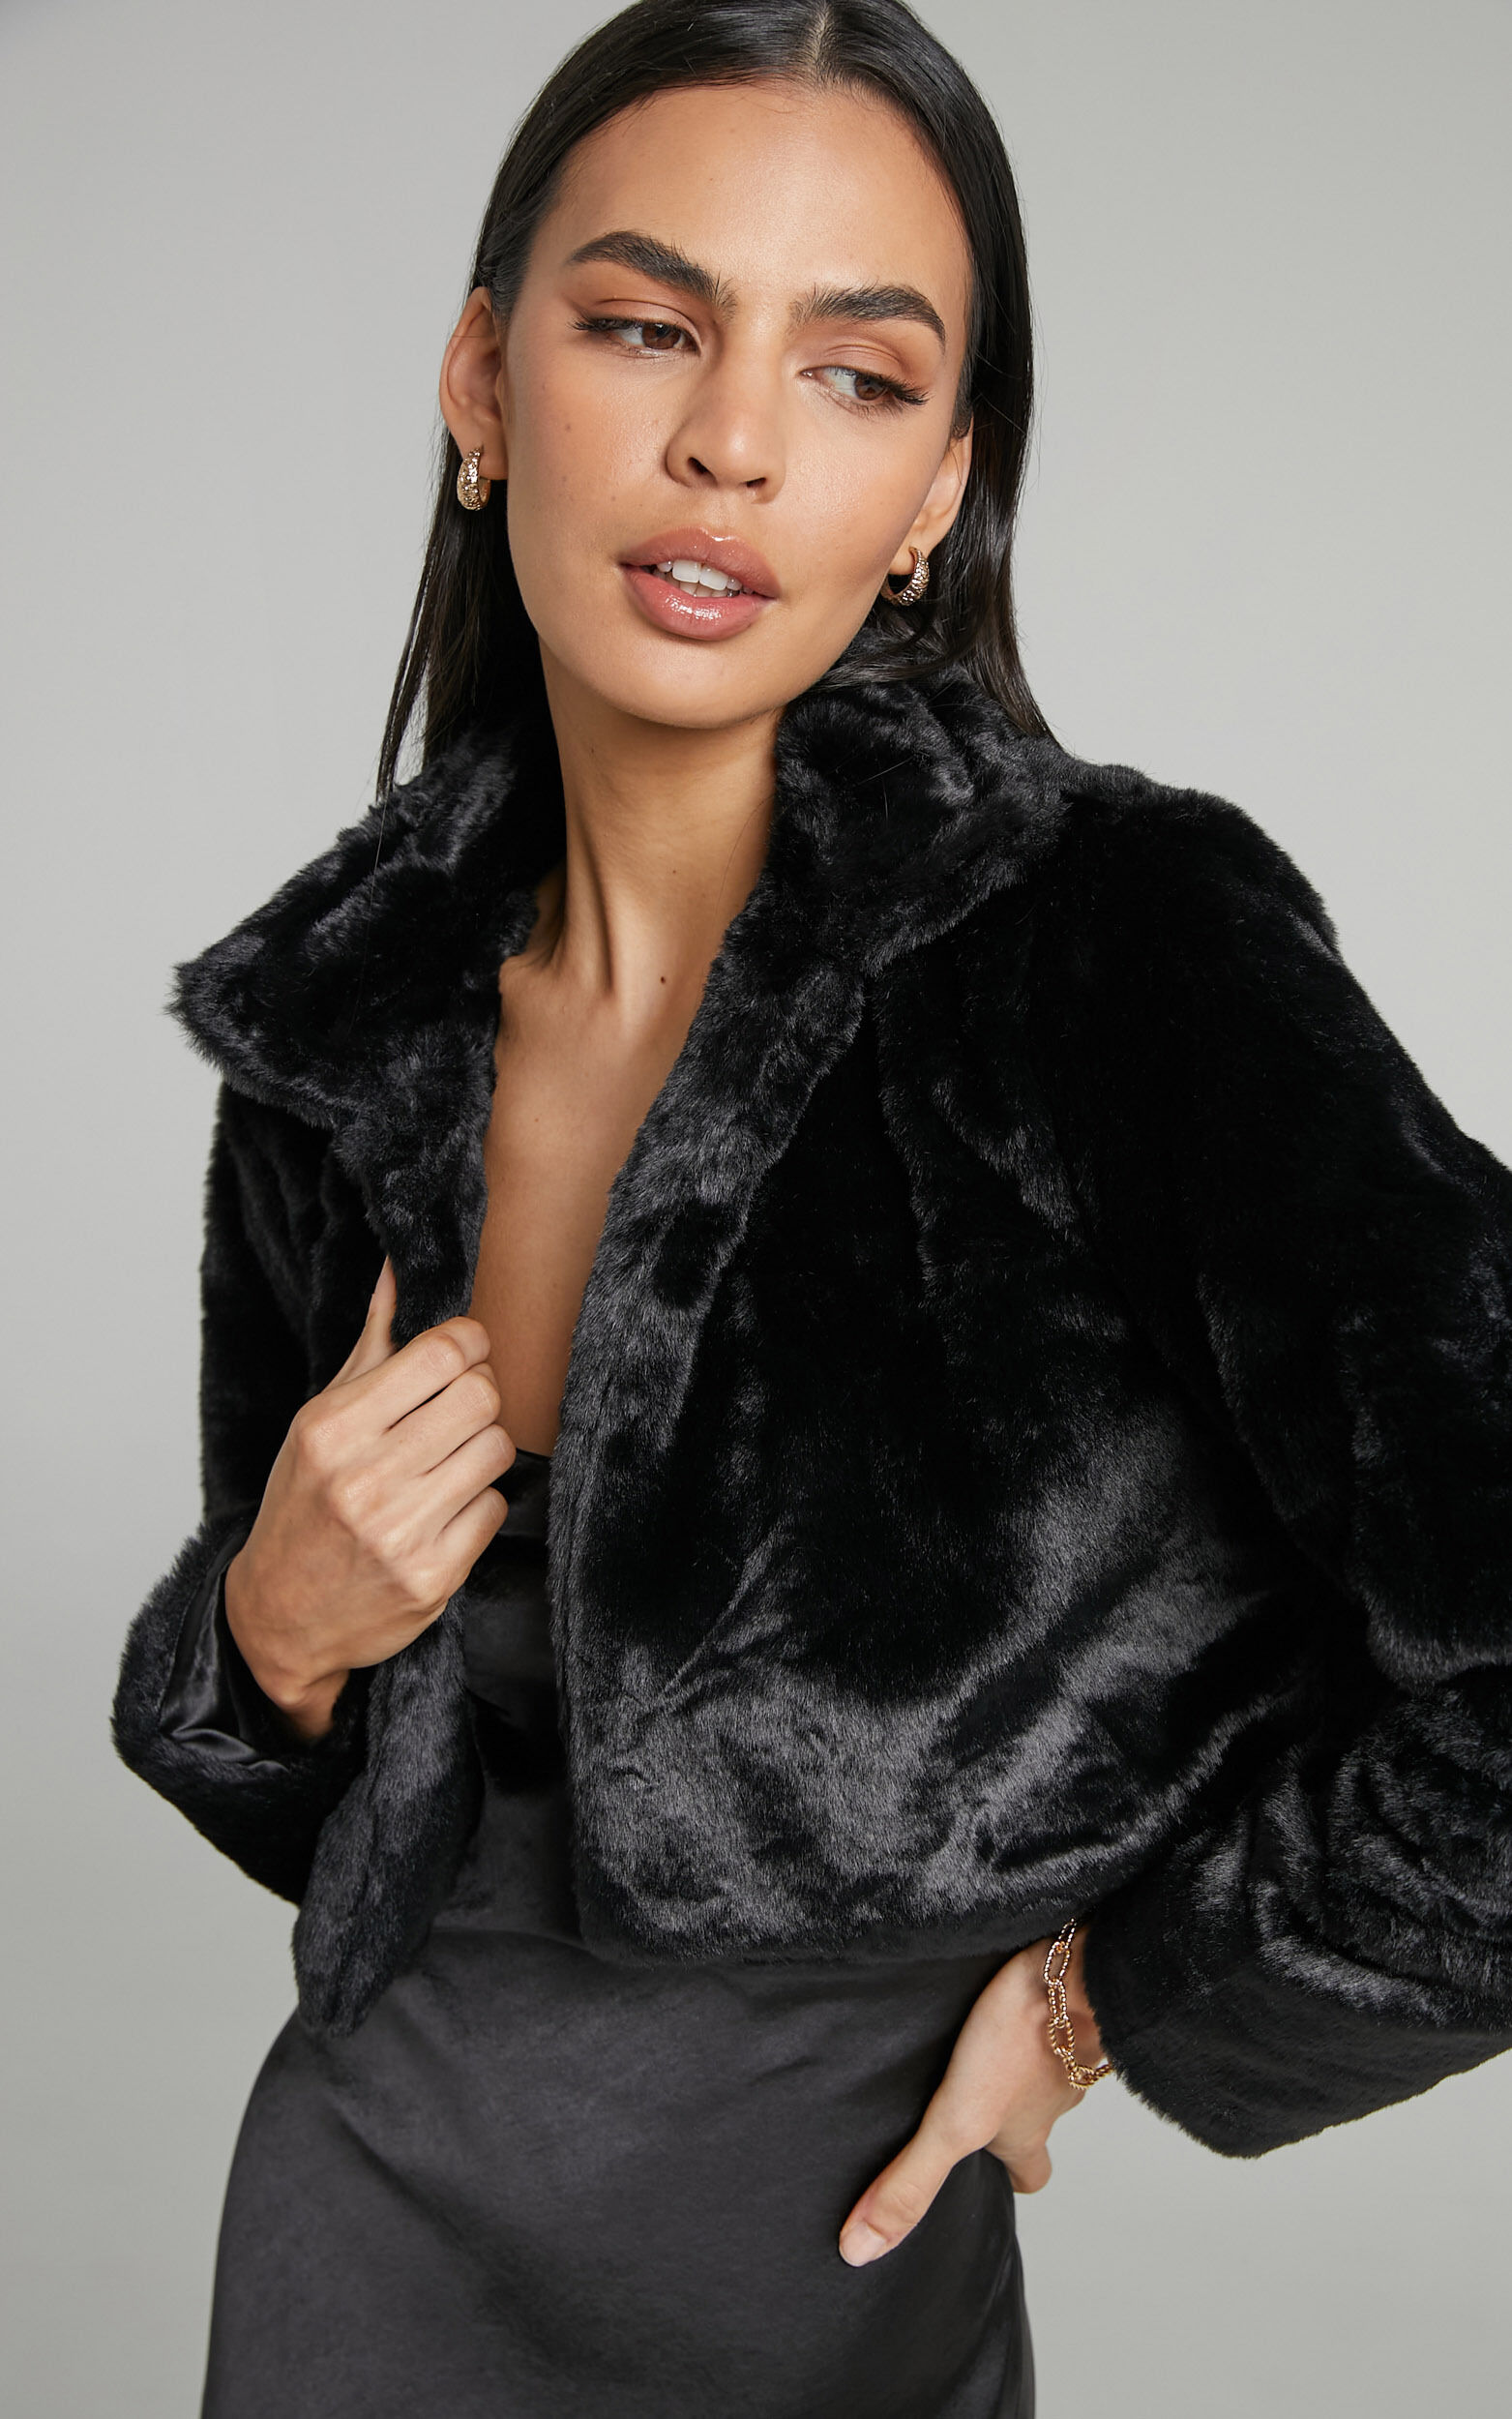 Roxnie Cropped Faux Fur Jacket in Black - 04, BLK1, super-hi-res image number null